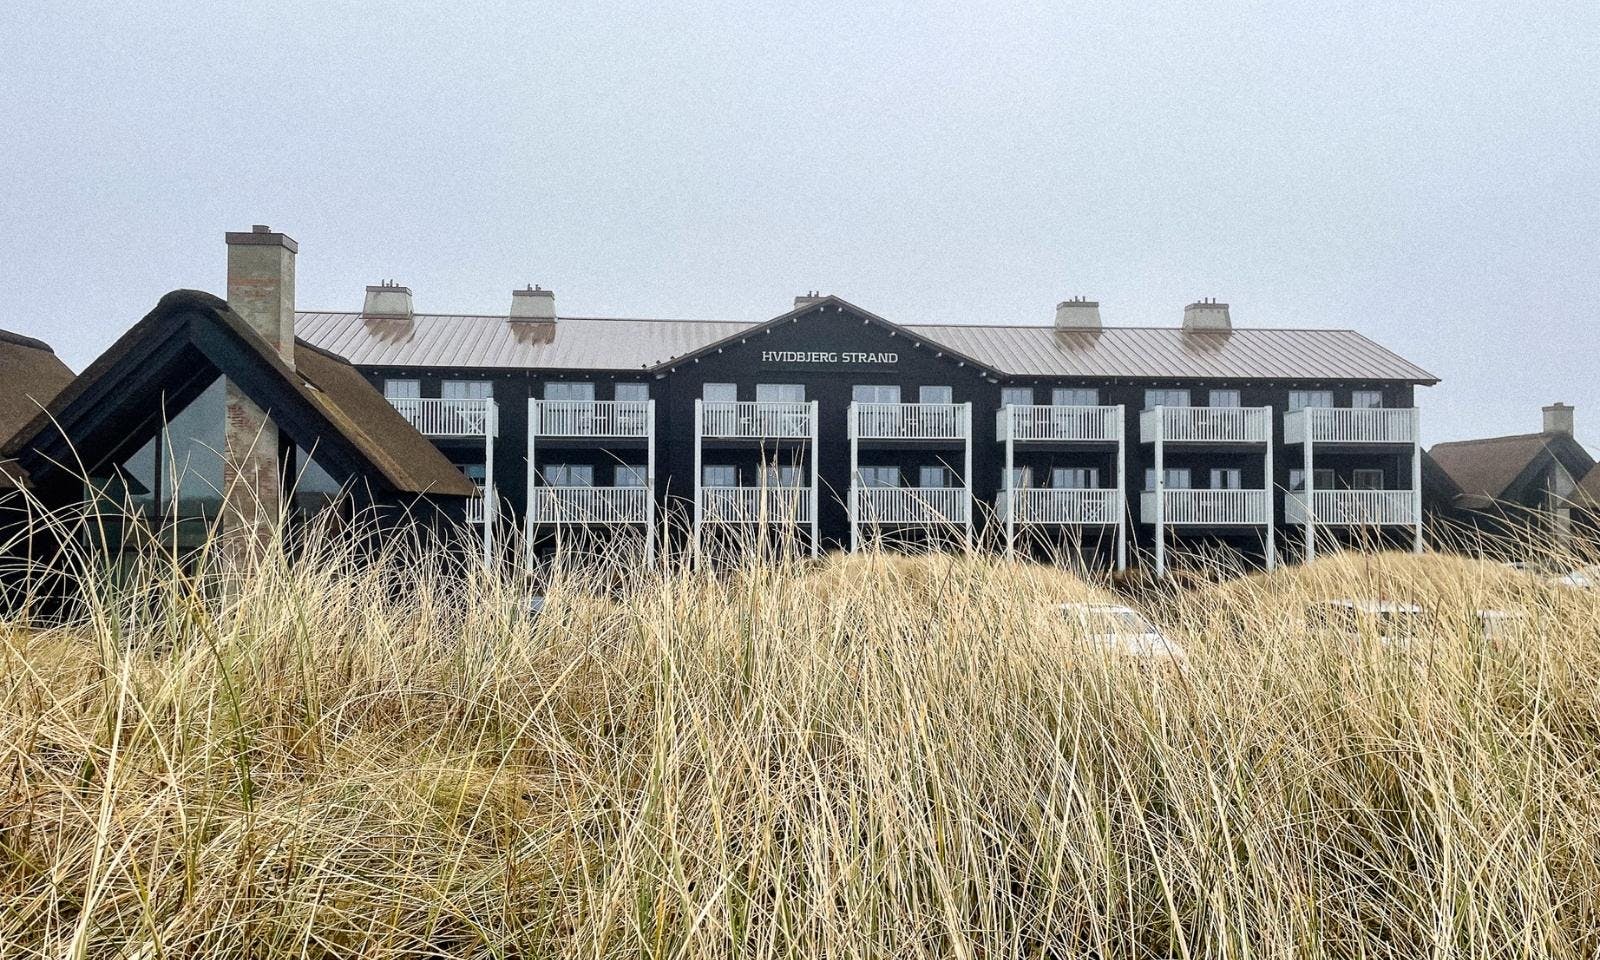 Hotel in Dänemark am Meer